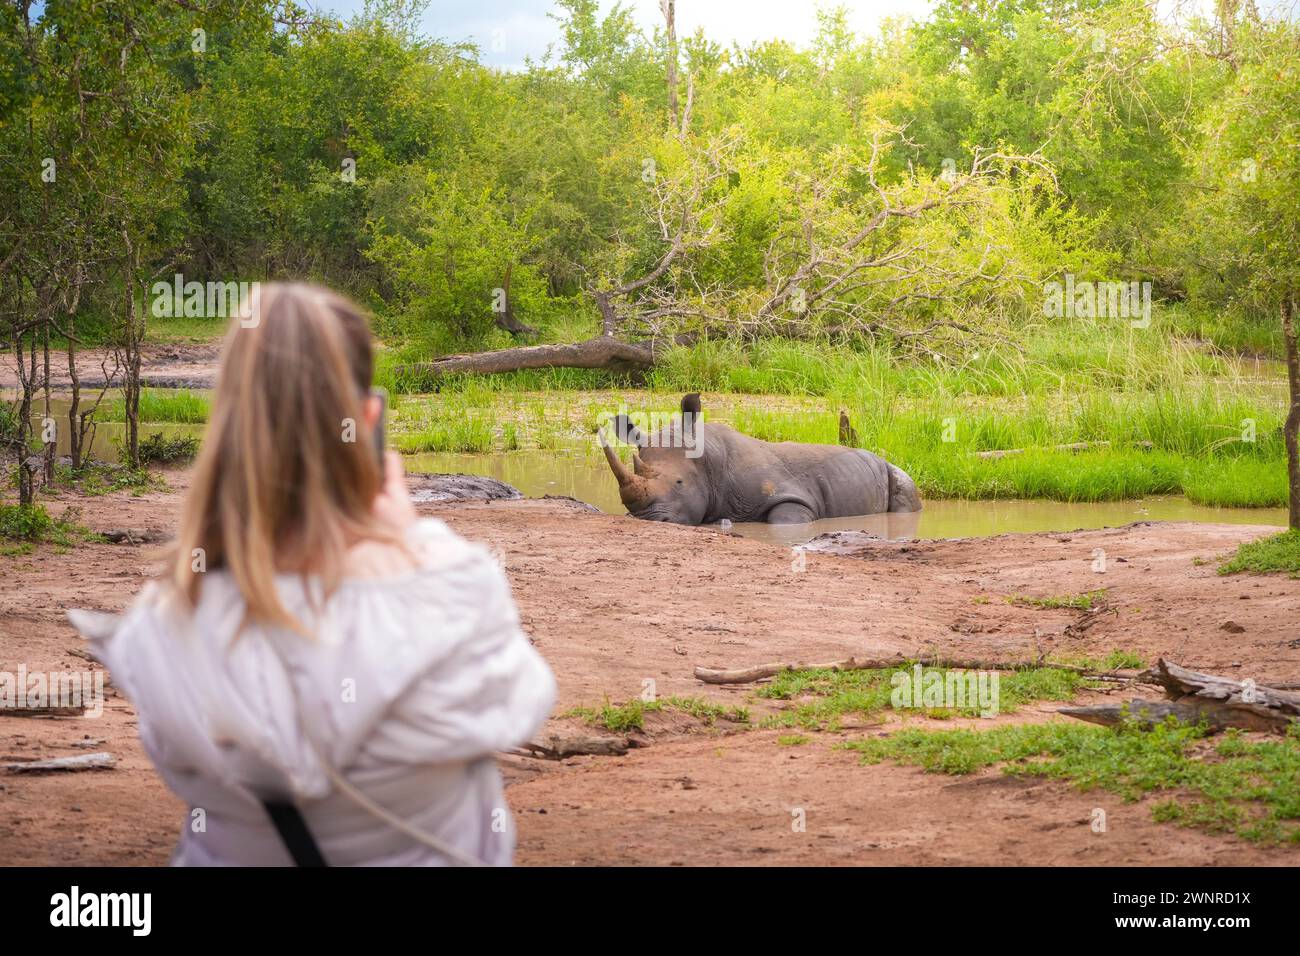 Si vede una donna fotografare un rinoceronte che riposa in acqua, catturando un momento unico nell'habitat naturale. Foto Stock